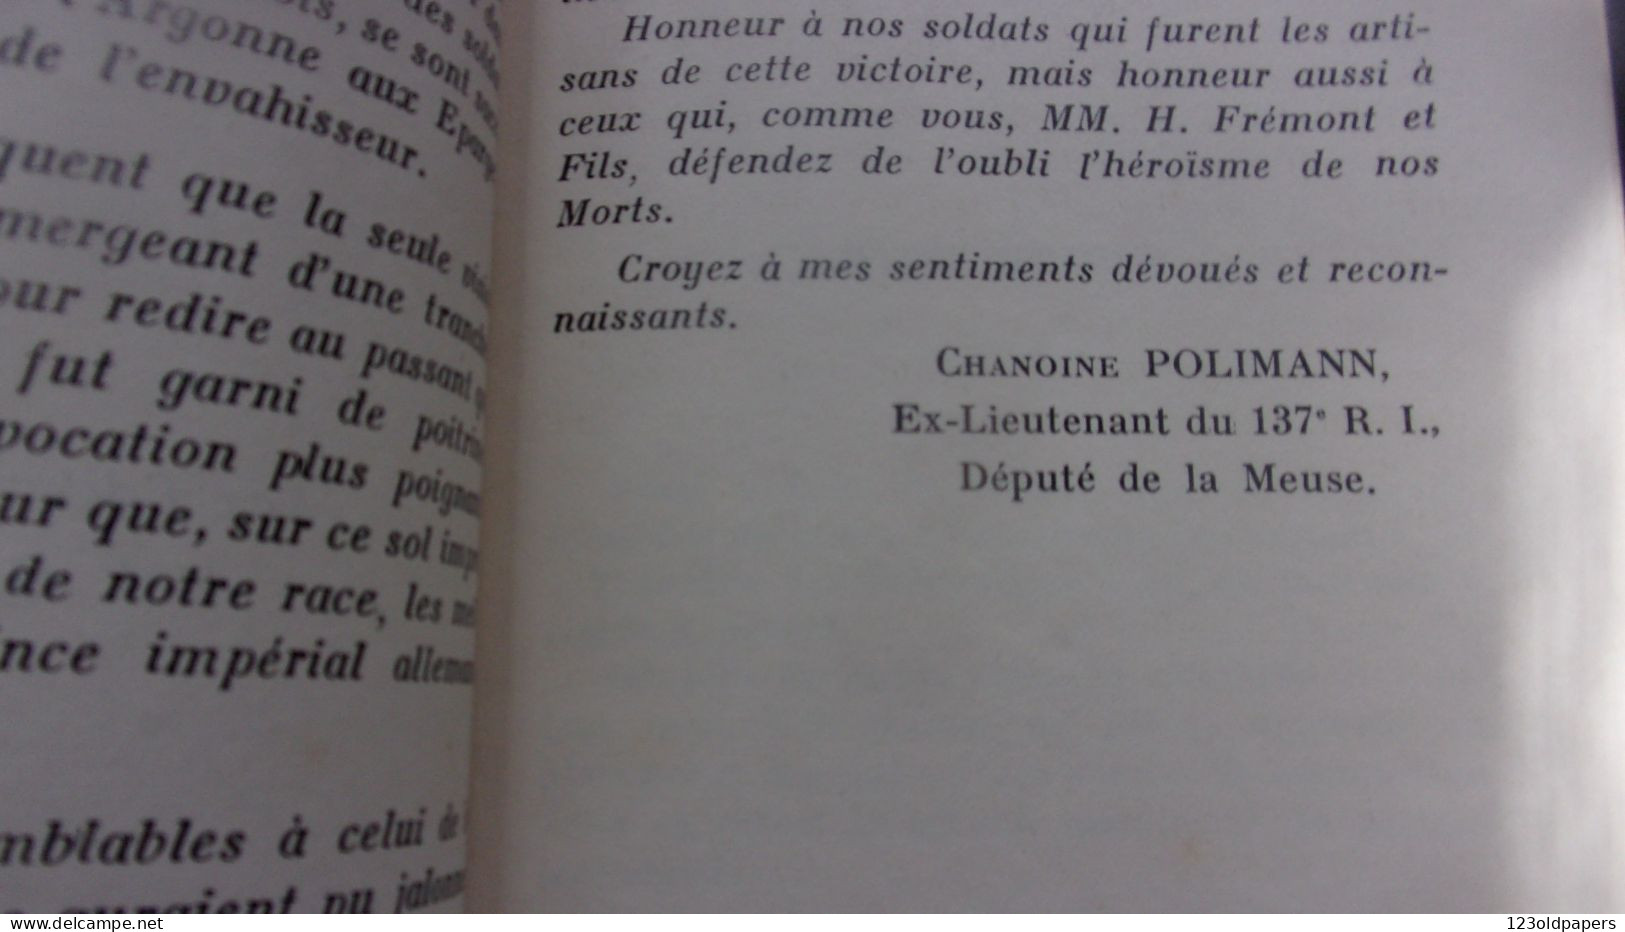 ️  ️  WWI La Tranchée Des Baïonnettes Son Histoire Lettre-préface De M. Le Chanoine Polimann 1939 - Autres & Non Classés